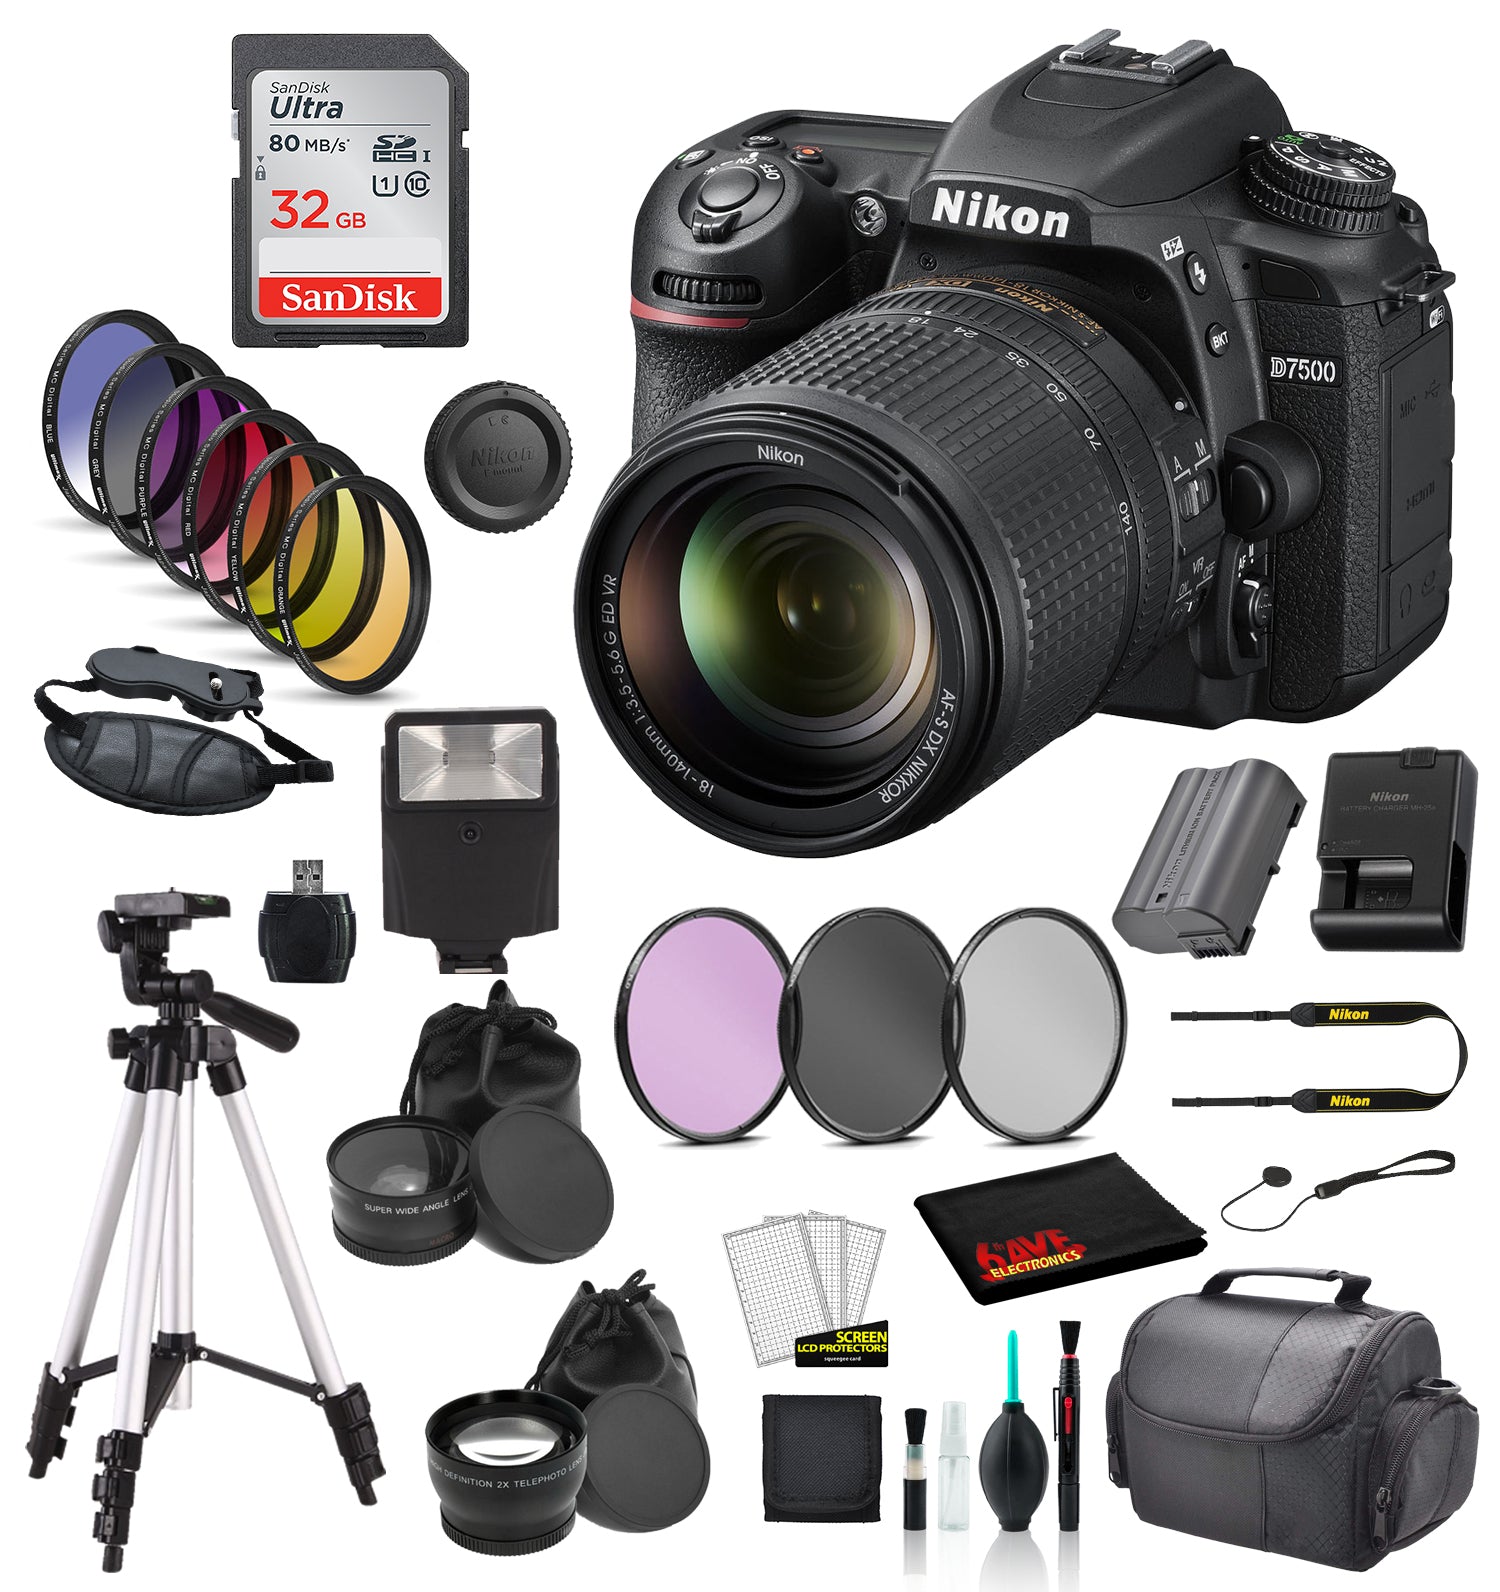 Nikon D7500 DSLR Camera with 18-140mm Lens Starter Bundle 01